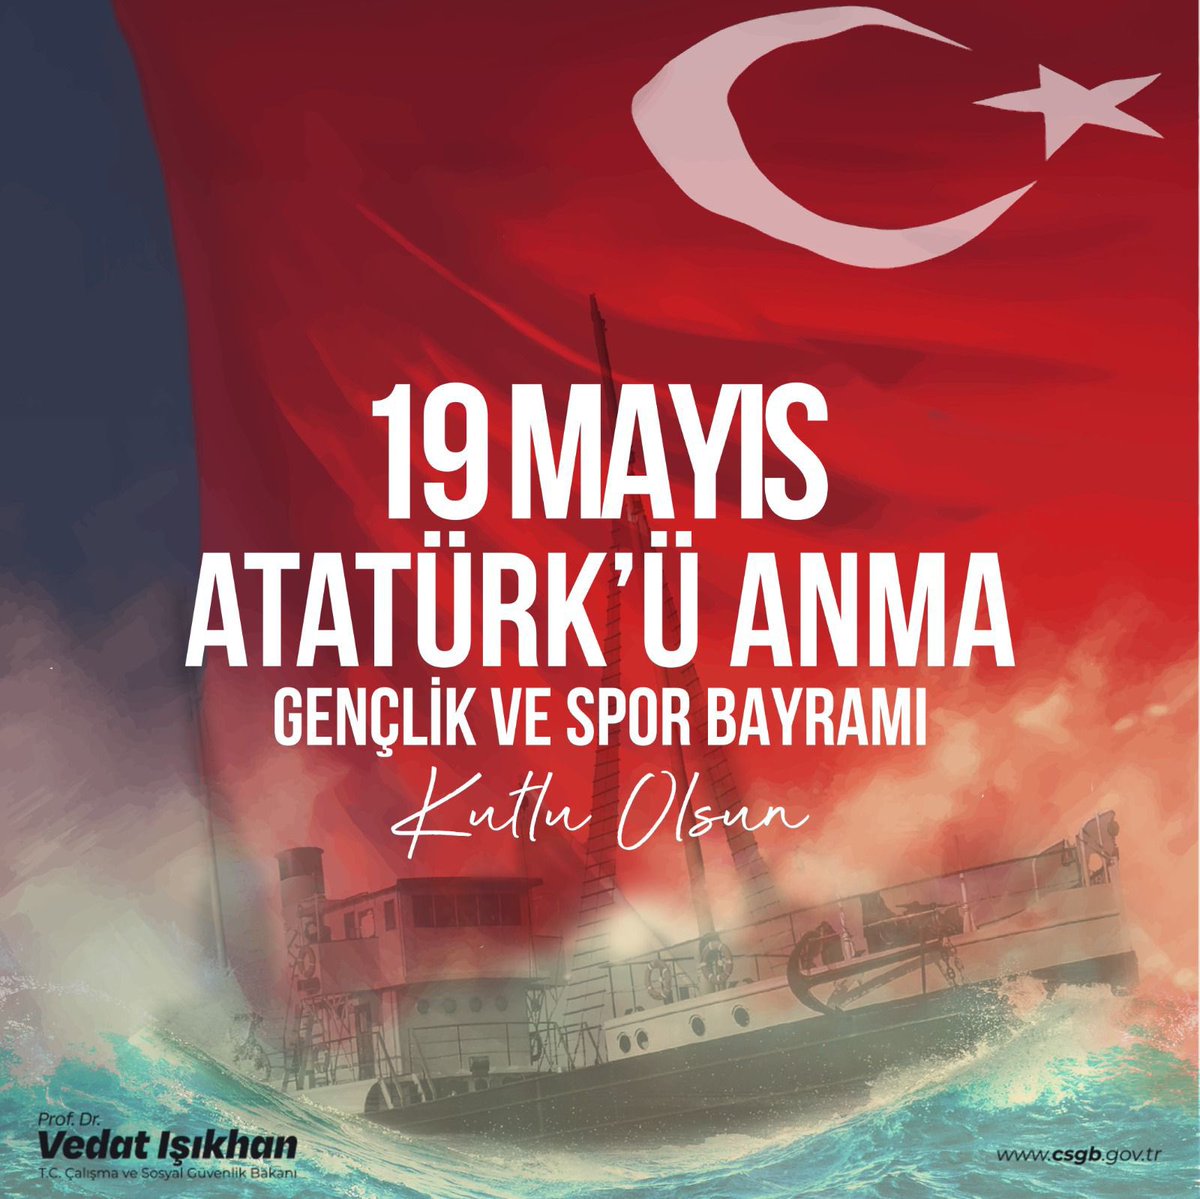 Cumhuriyetimizin banisi Gazi Mustafa Kemal Atatürk ve silah arkadaşlarını saygıyla anıyor, kıymetli gençlerimiz başta olmak üzere aziz milletimizin 19 Mayıs Atatürk’ü Anma, Gençlik ve Spor Bayramı’nı kutluyorum. 🇹🇷